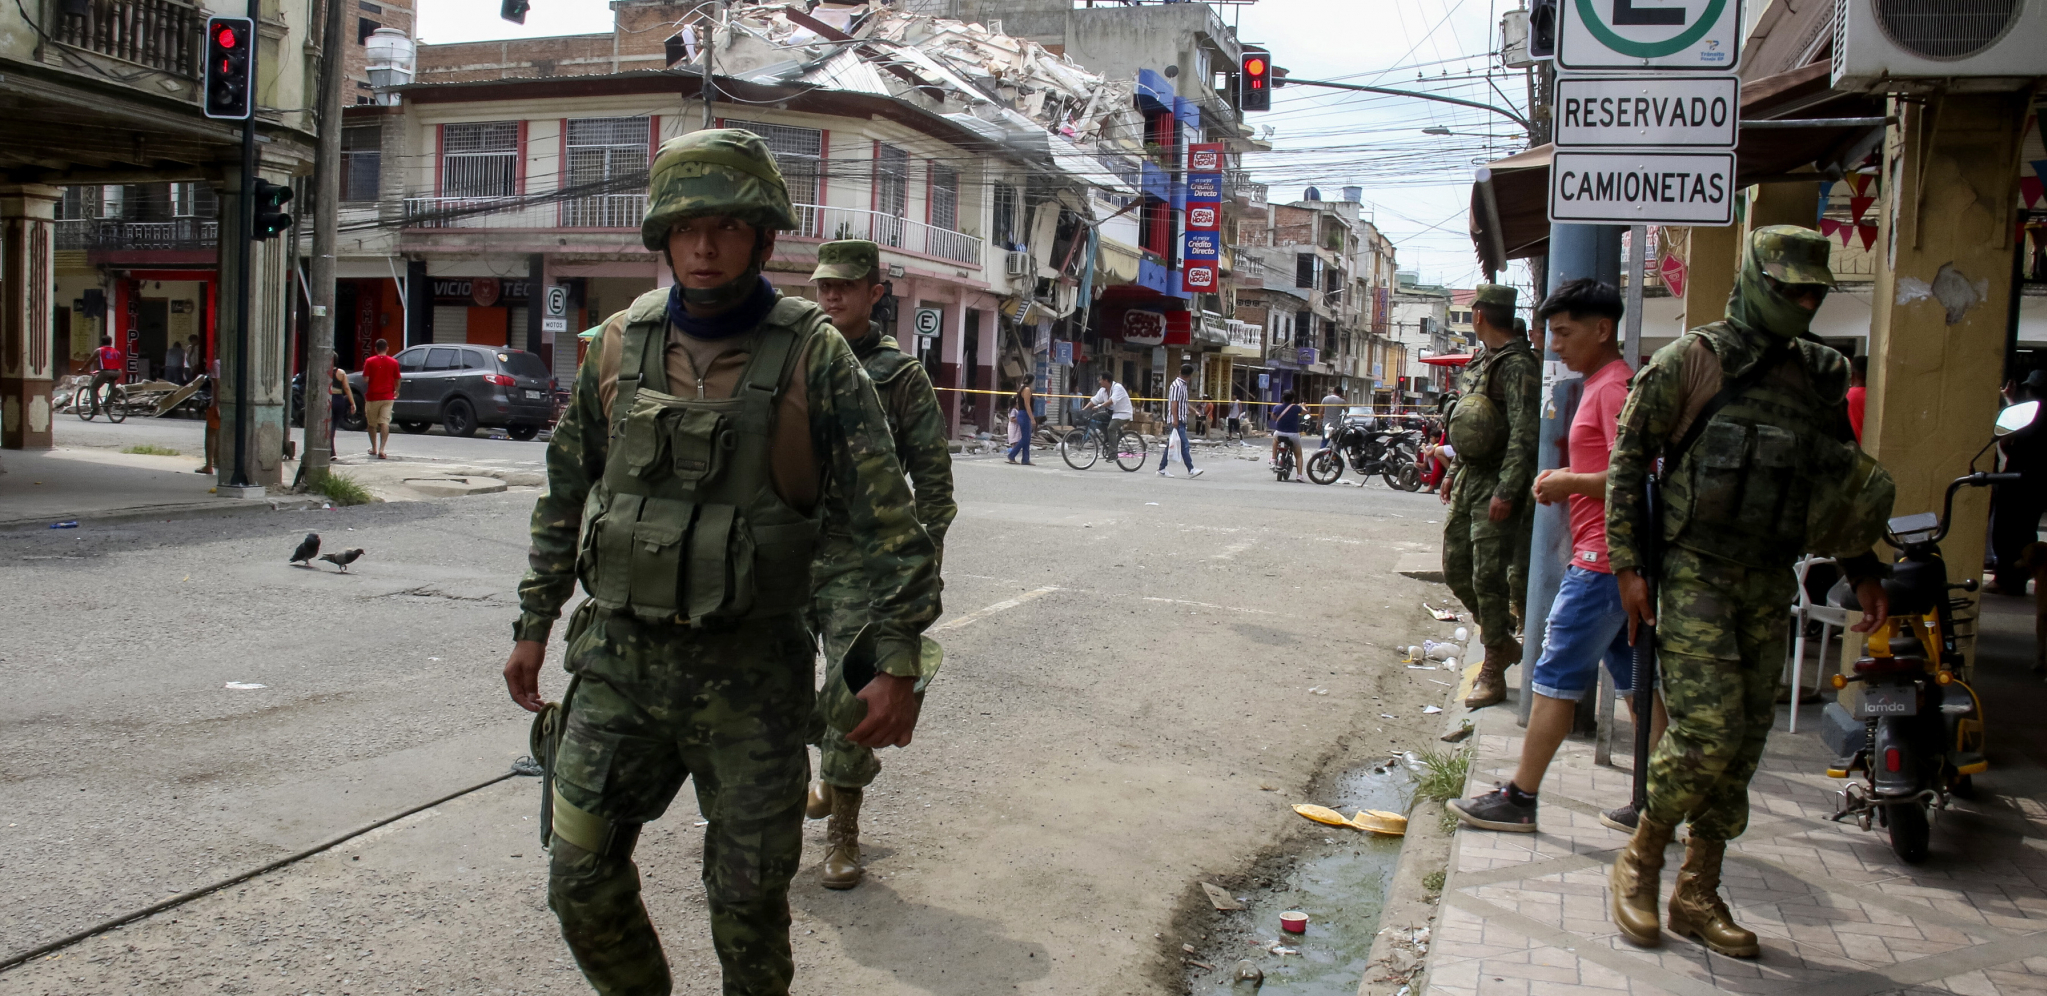 POVREĐEN JEDAN NOVINAR Dve televizijske stanice U Ekvadoru dobile pošiljke sa eksplozivom vojnog tipa